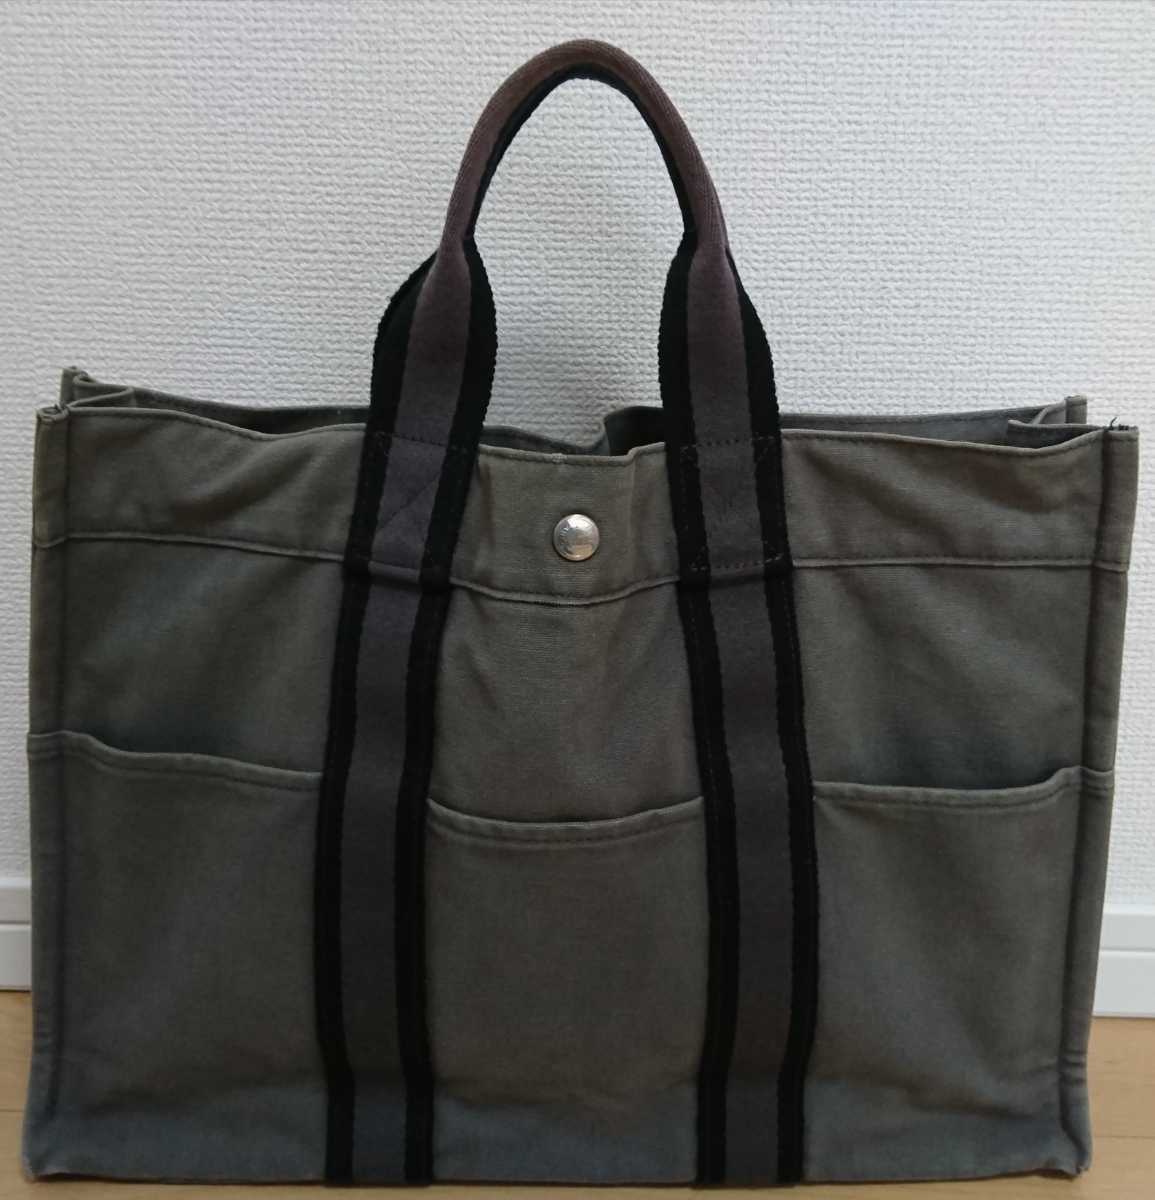 エルメス HERMES トートバッグ フールトゥ かばん 鞄 手持ち MM キャンバス グレー×ブラック 灰×黒 _画像3